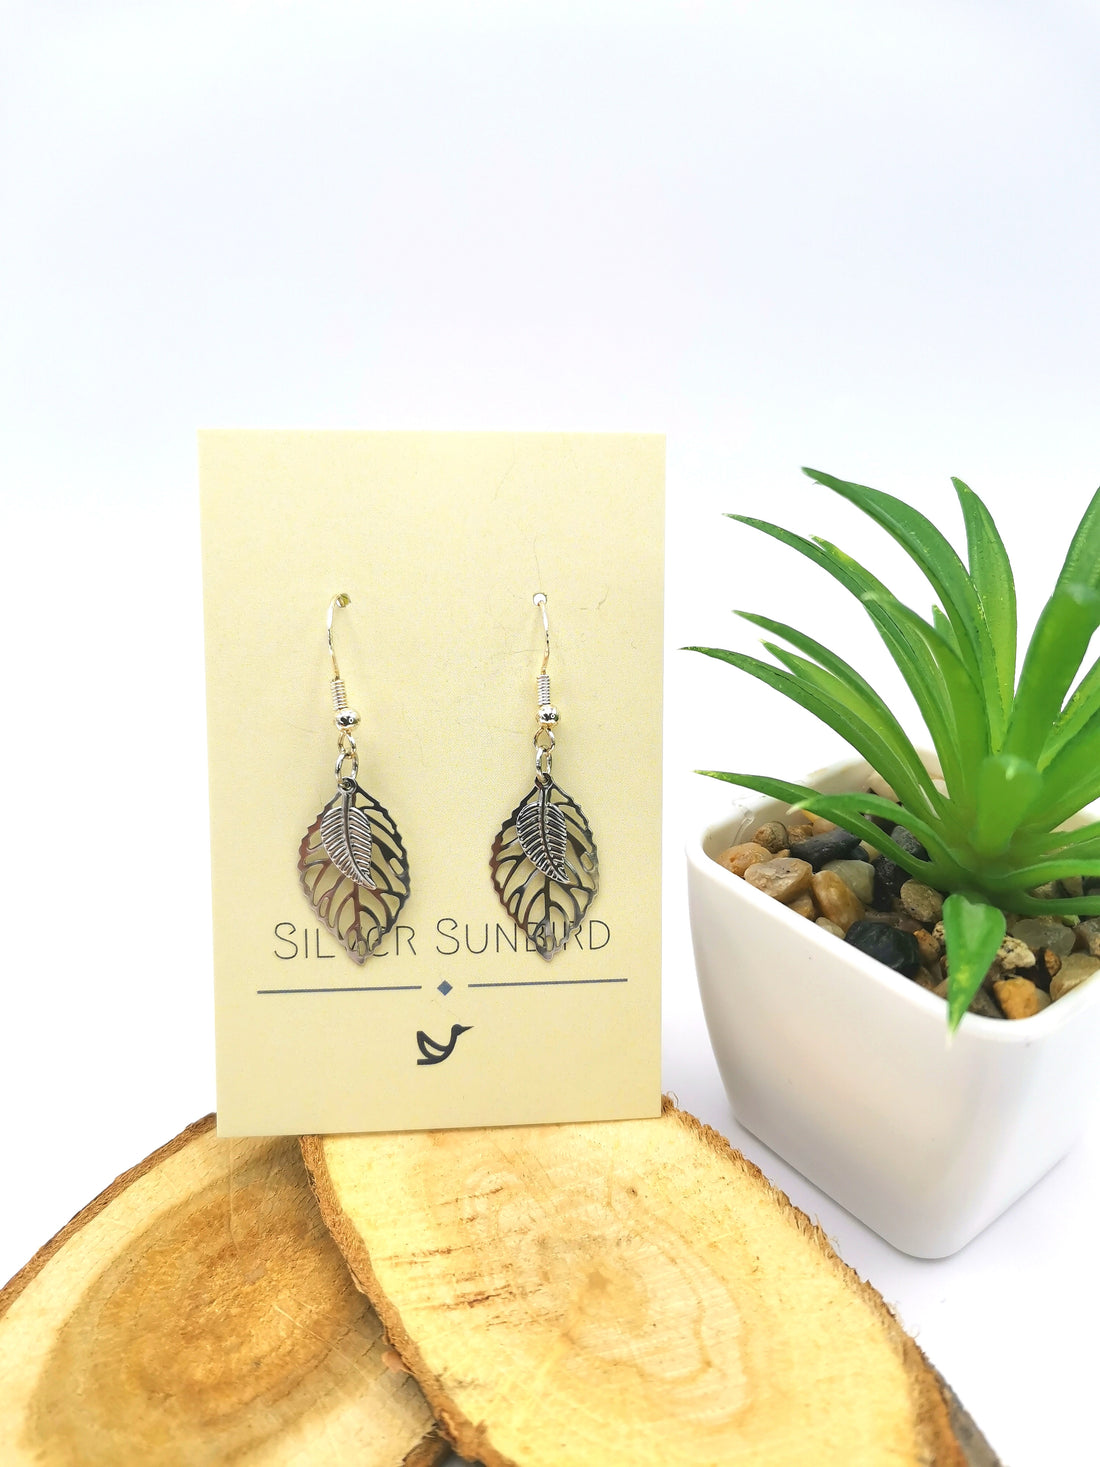 Two Leafy Earrings - Silver Sunbird Bohemian Earrings